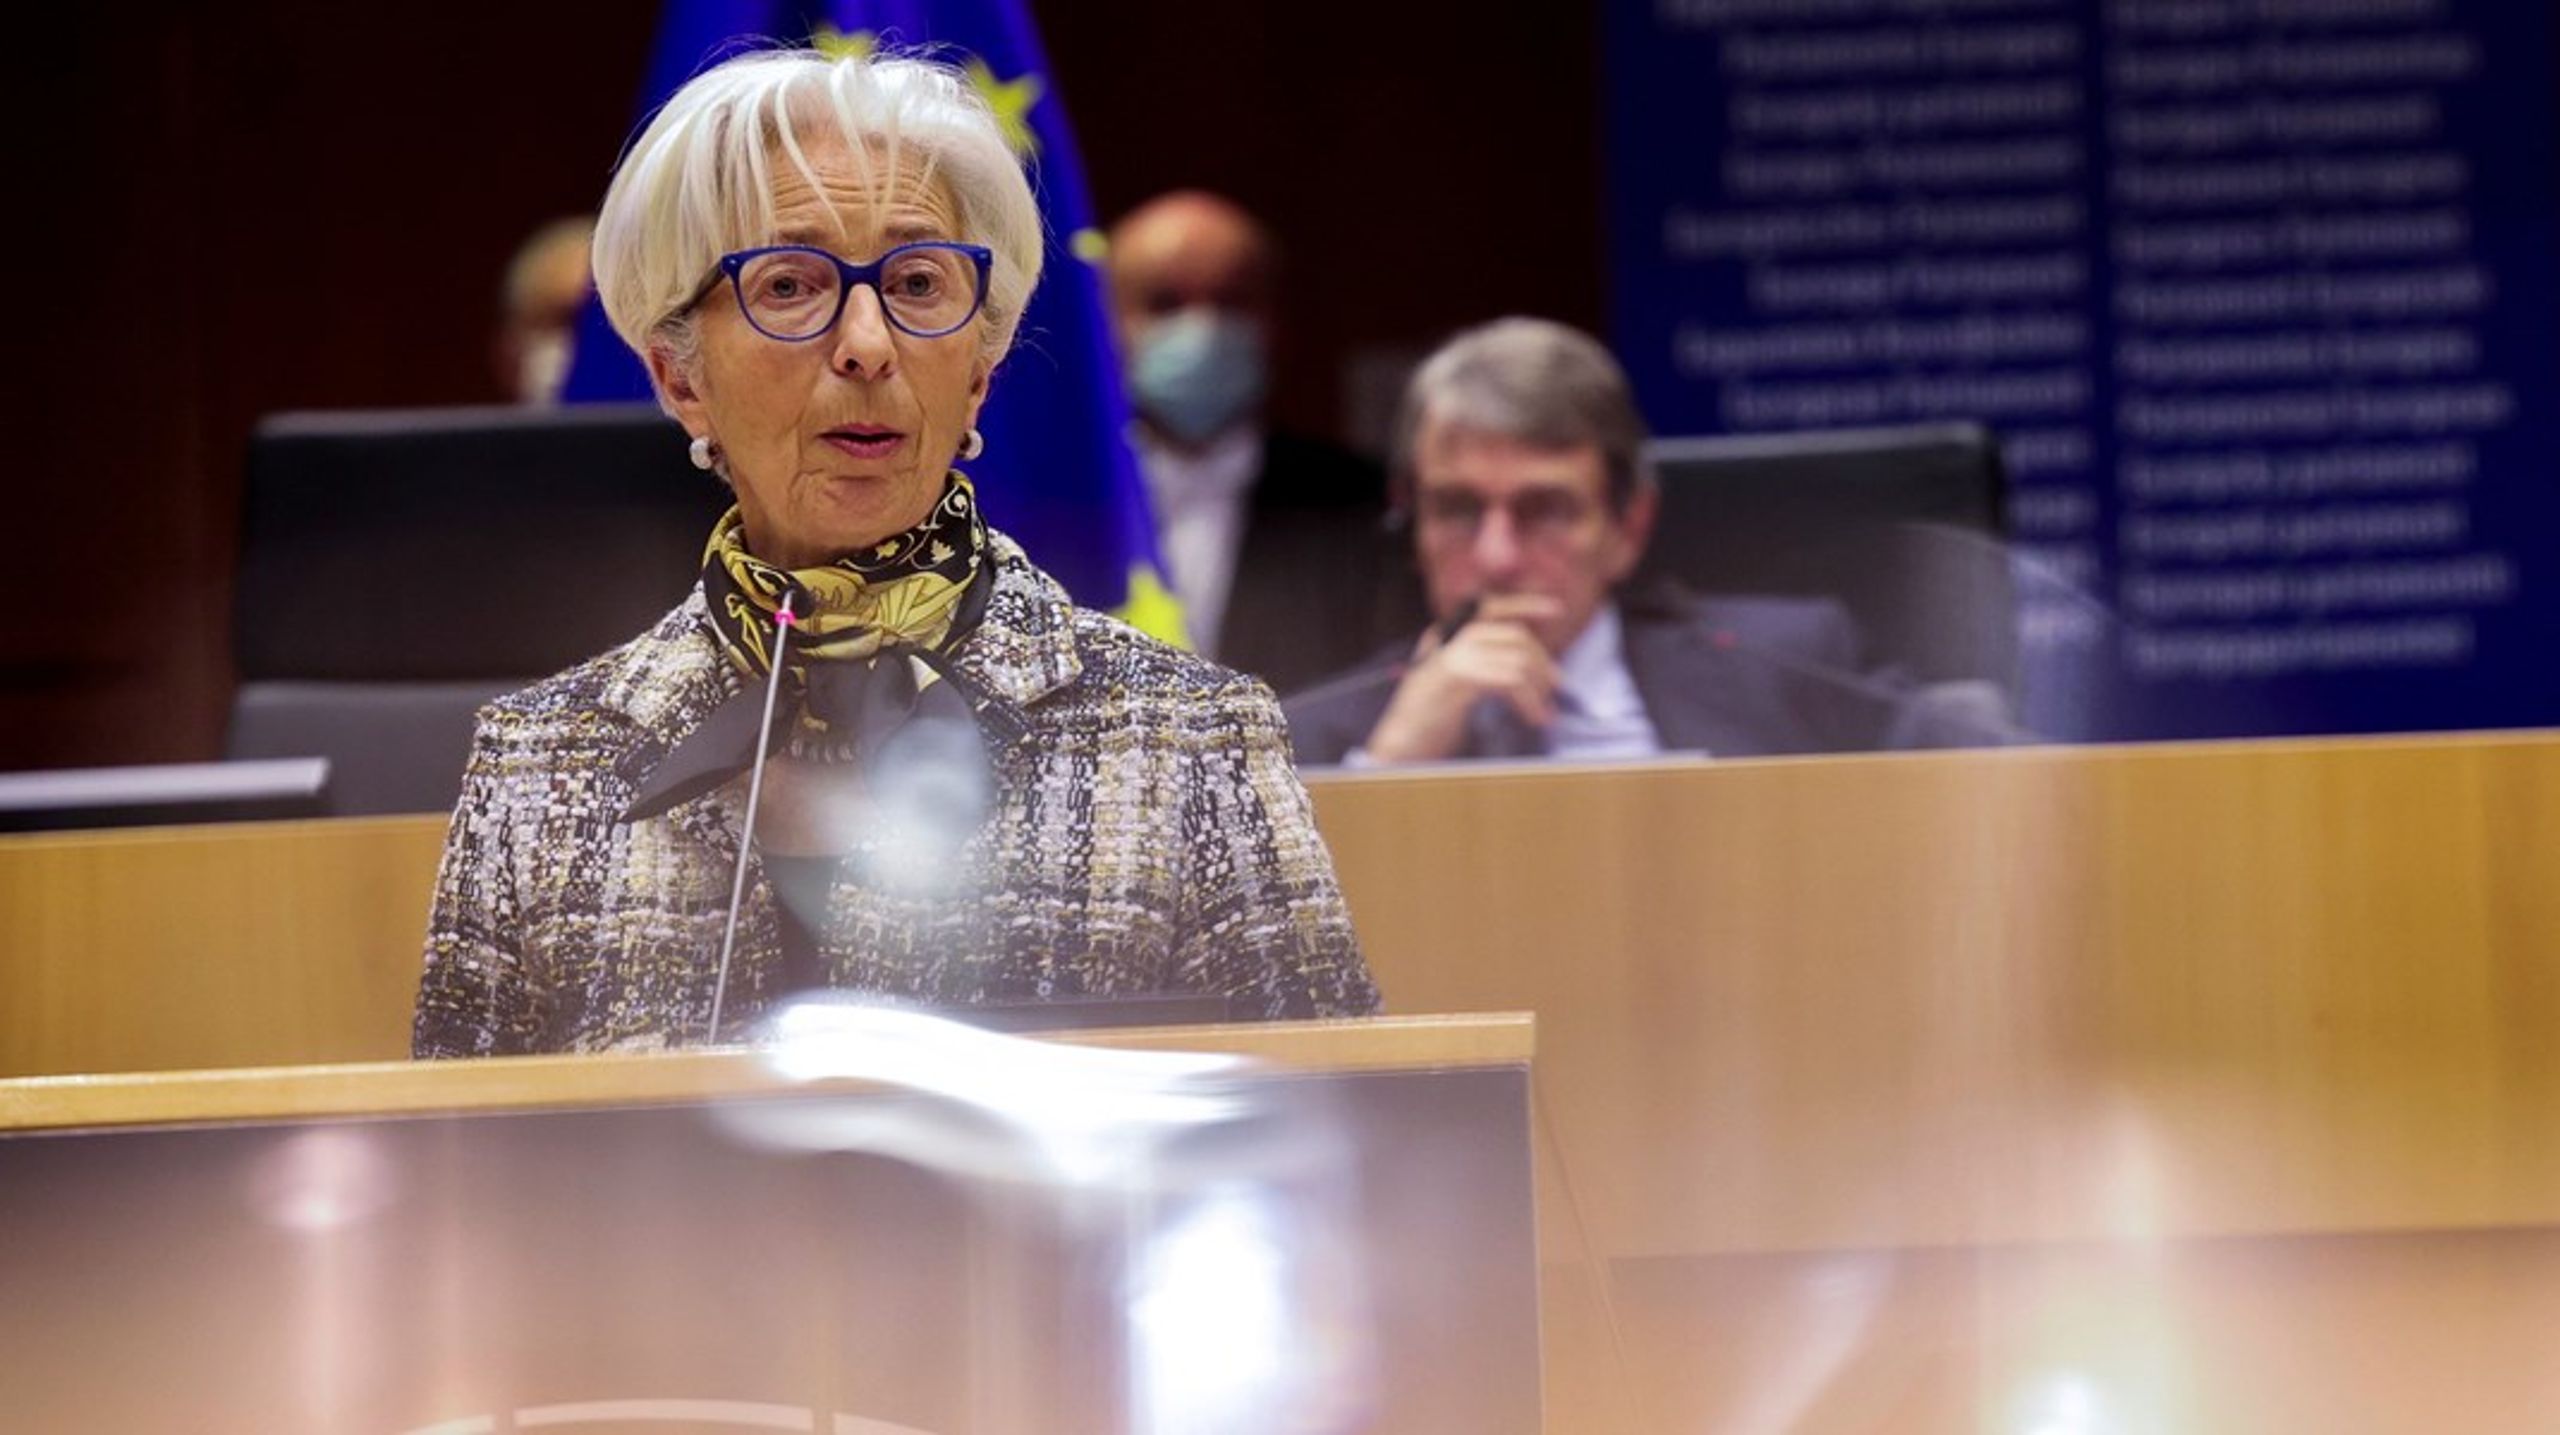 ECB-chef Christine Lagarde har&nbsp;varslet, at sammenhængen mellem pengepolitik og klimaforandringer kommer til at spille en rolle i ECB's gennemgang af den samlede pengepolitiske strategi, skriver Søren Hove Ravn.